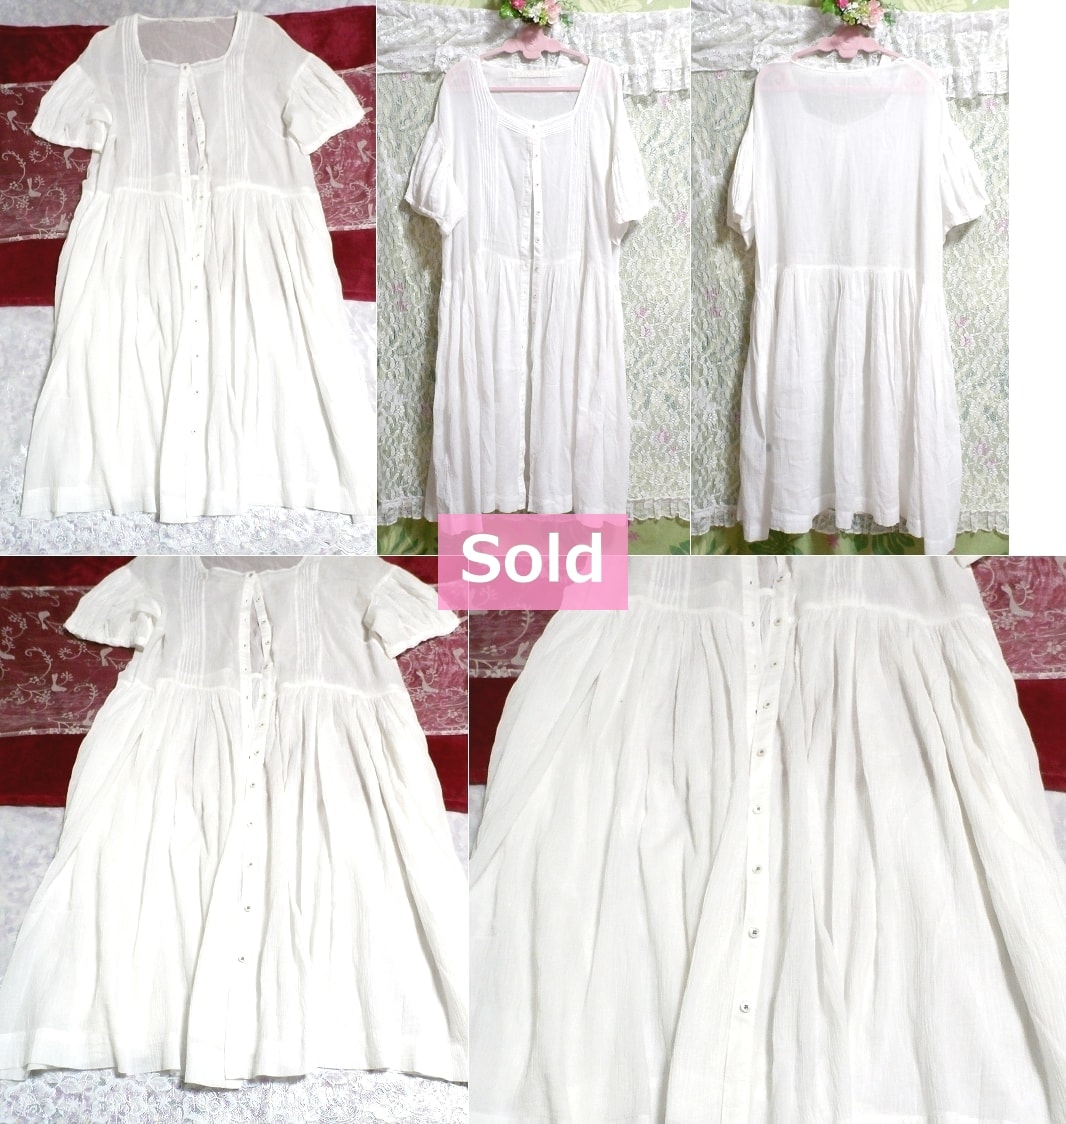 白ホワイト綿コットン100%シースルーシフォンロングカーディガン羽織 White cotton 100% see through chiffon long cardigan